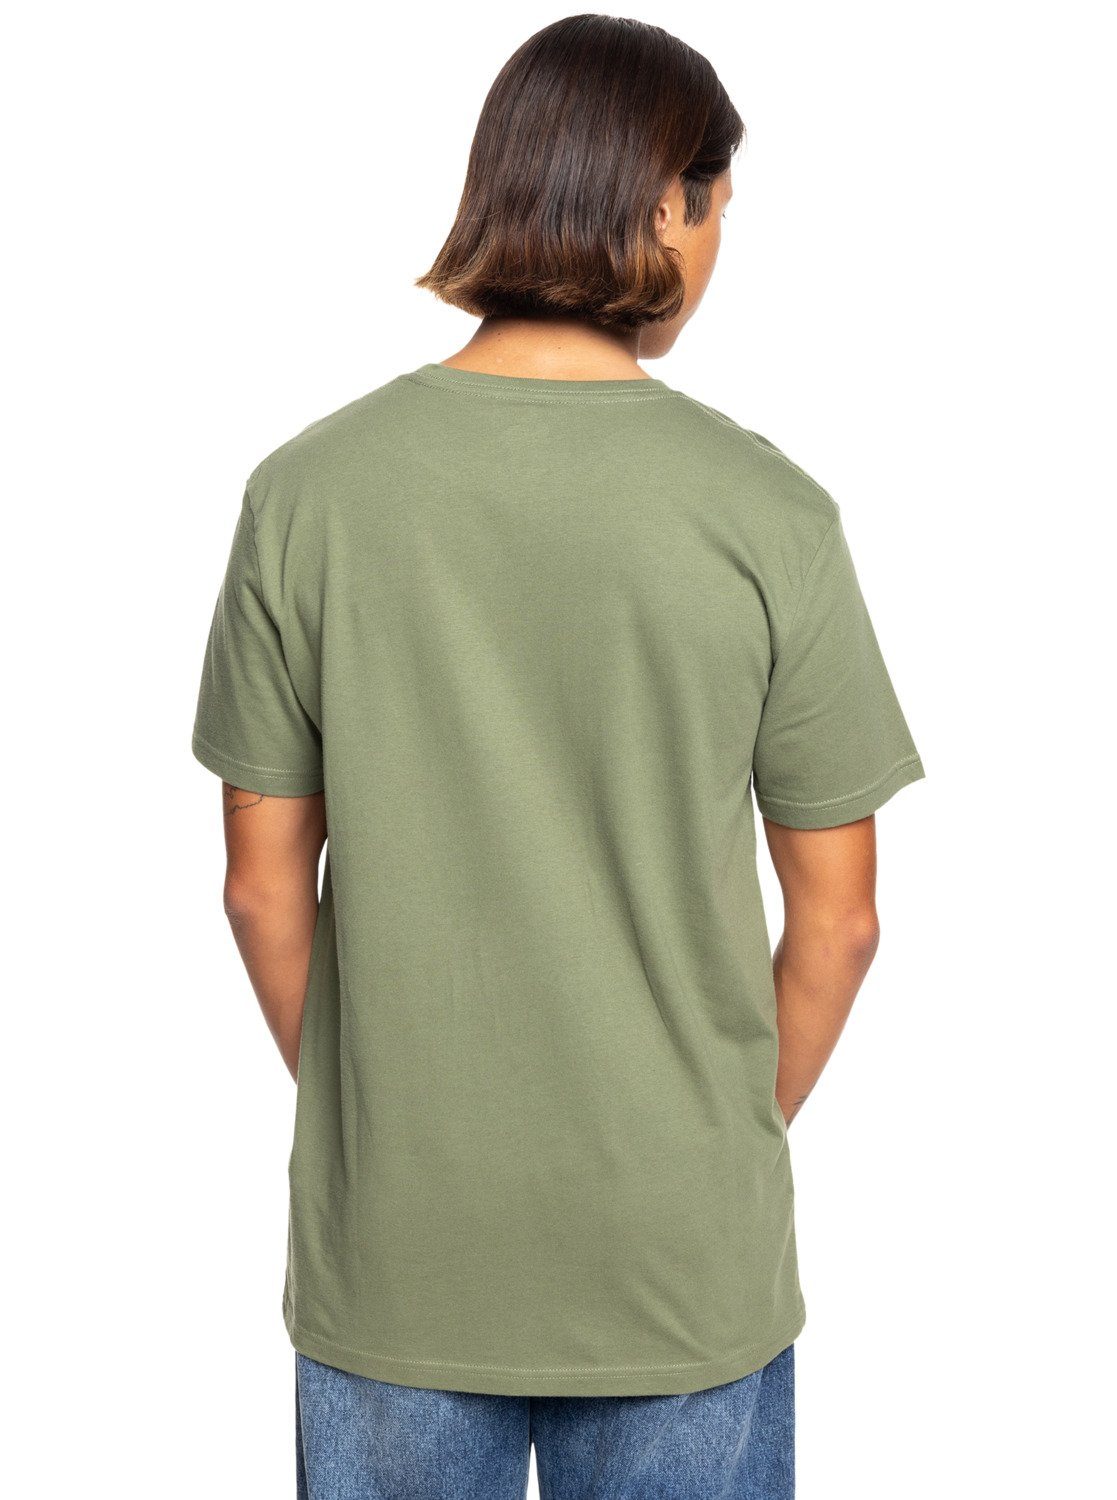 Circle Trim T-Shirt Four Clover Leaf Quiksilver